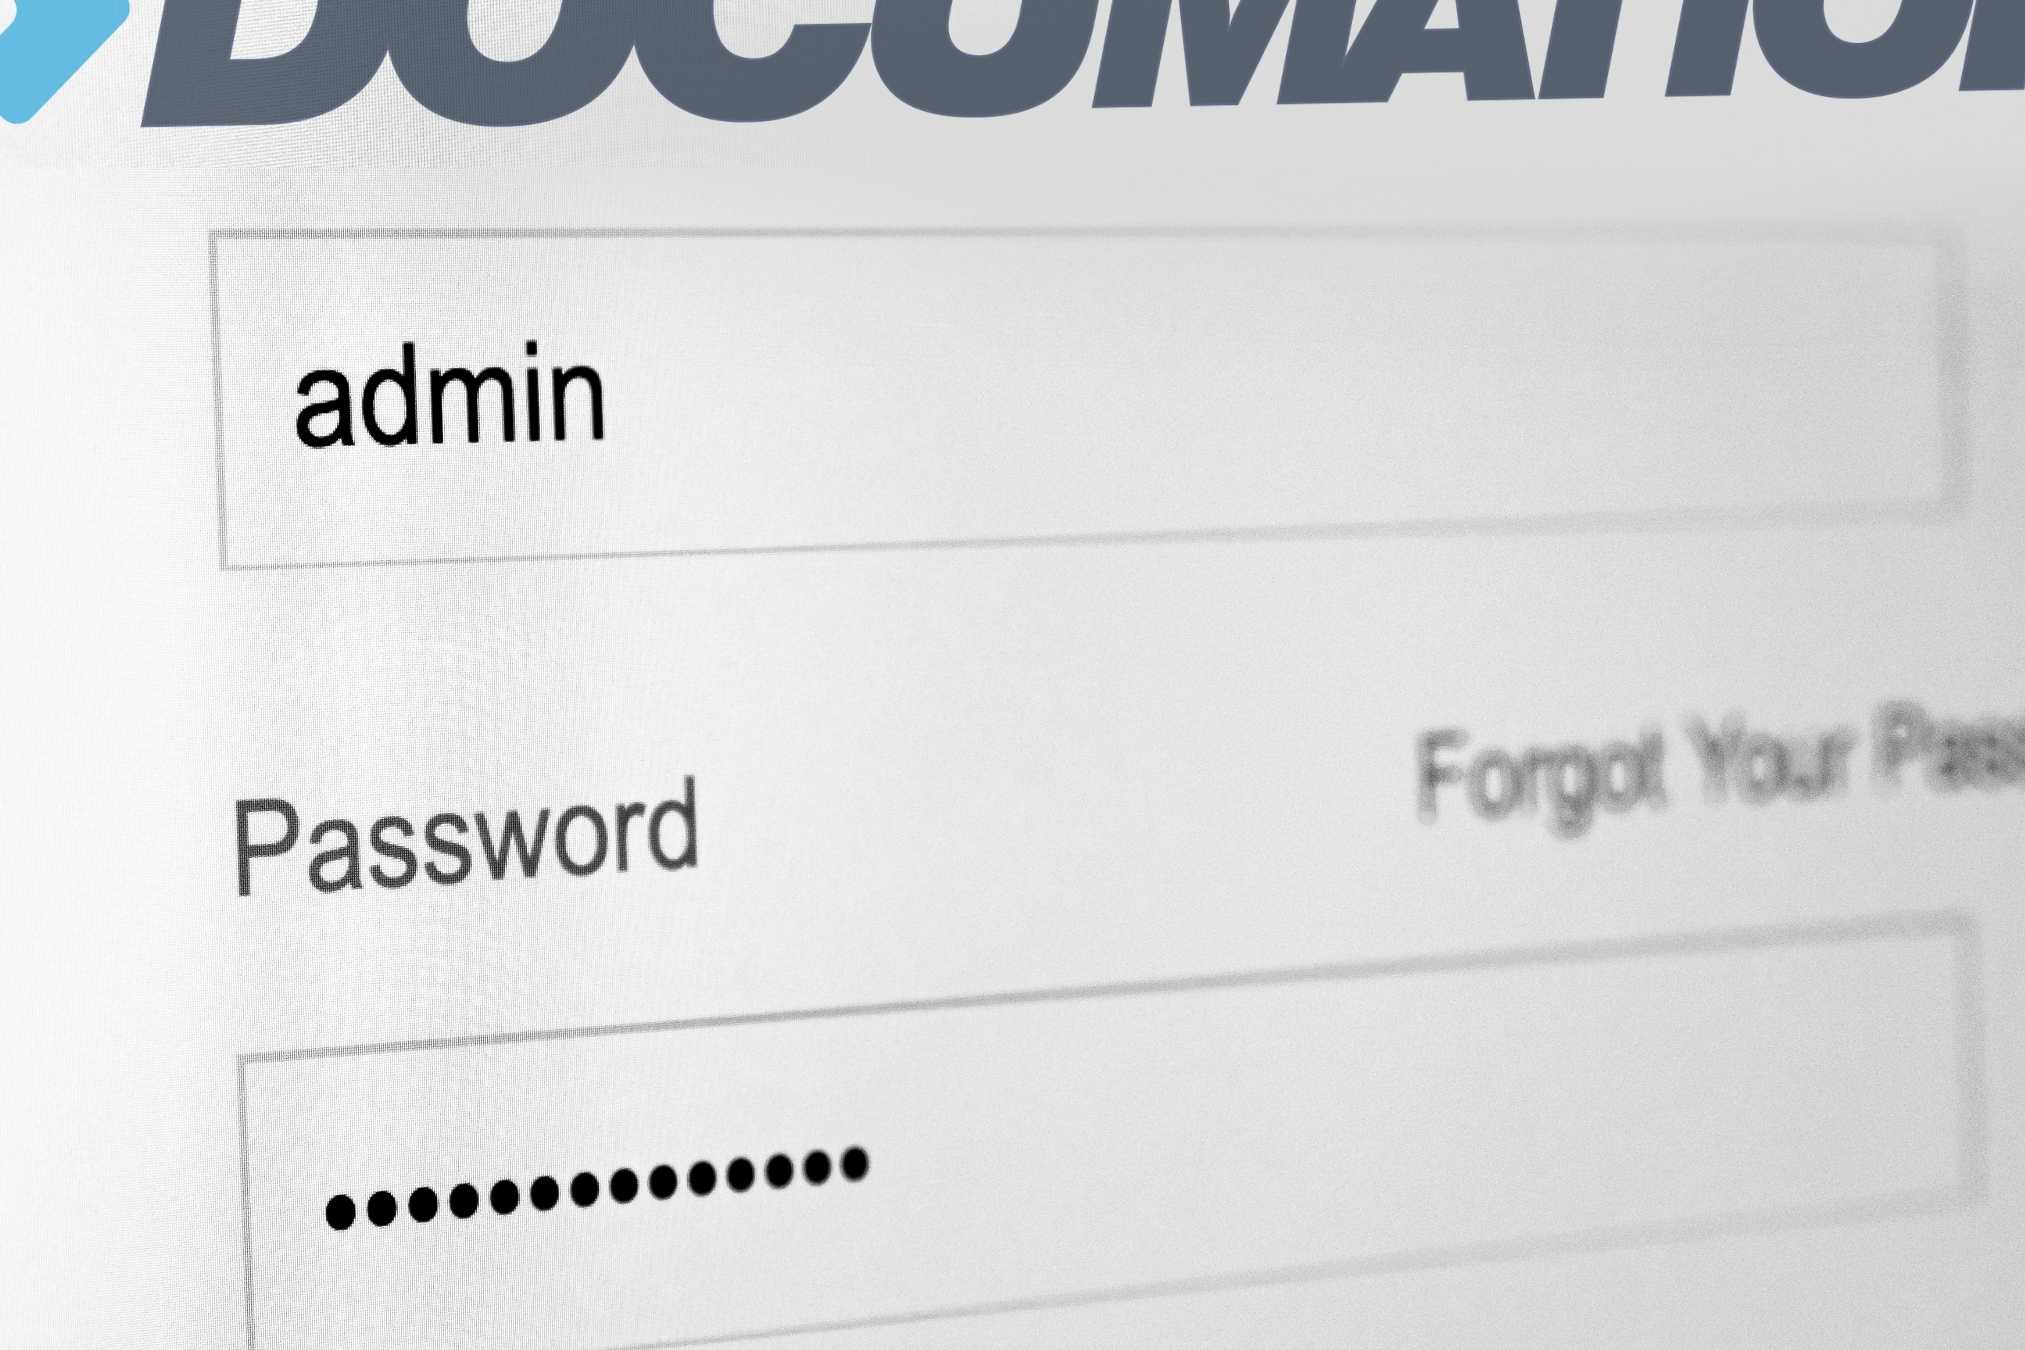 Close_up_admin_password_login_screen